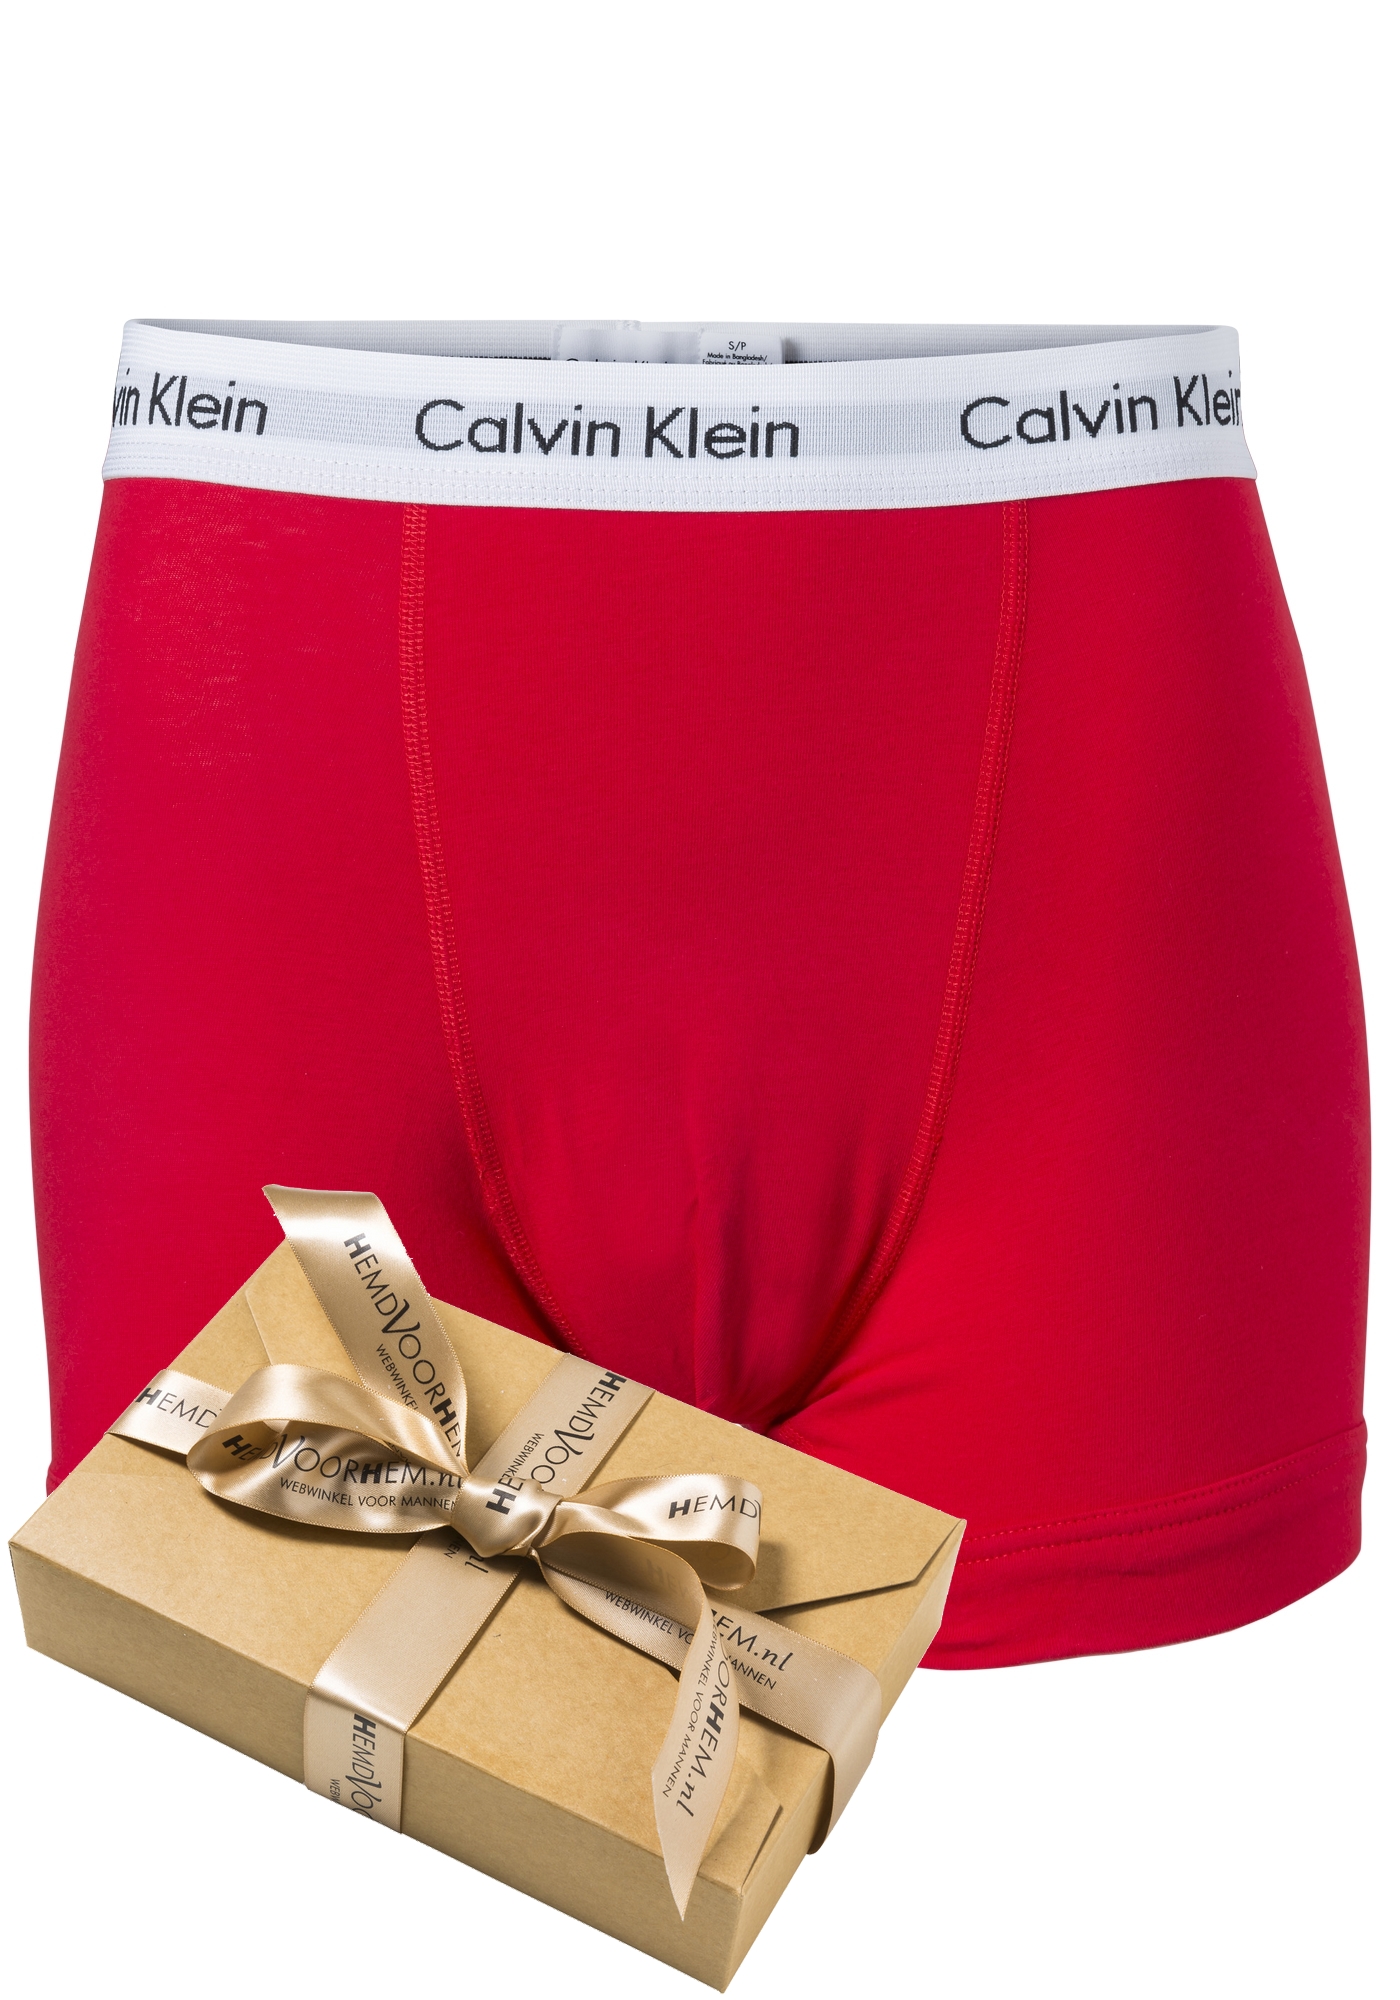 Verknald bruid Picknicken Calvin Klein Trunk, rood - De eerste voorjaarscollecties zijn binnen